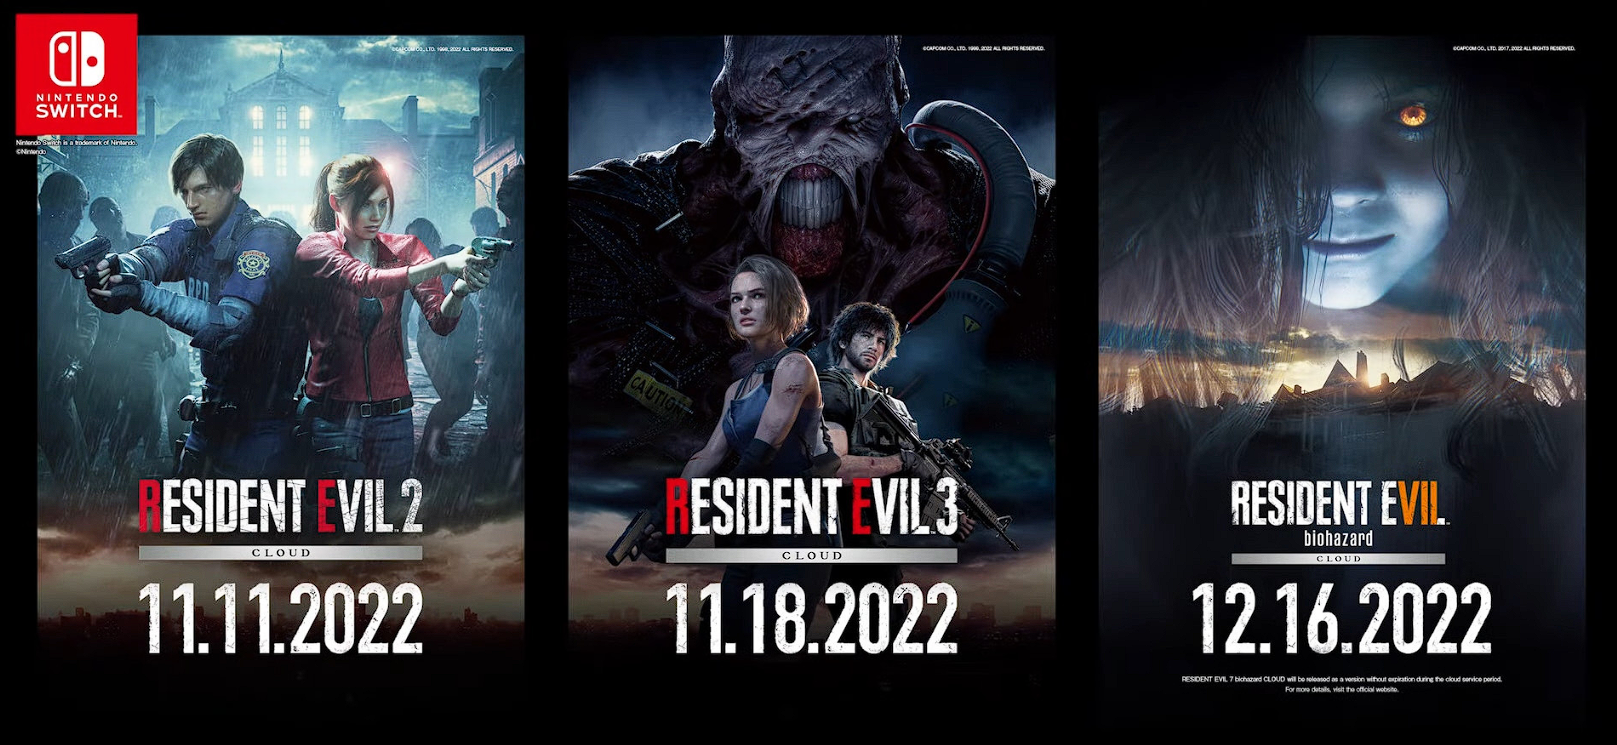 Capcom anunció el lanzamiento de los remakes de Resident Evil 2 y 3 en Nintendo Switch en noviembre, y Resident Evil 7 debería esperarse para el 16 de diciembre-2